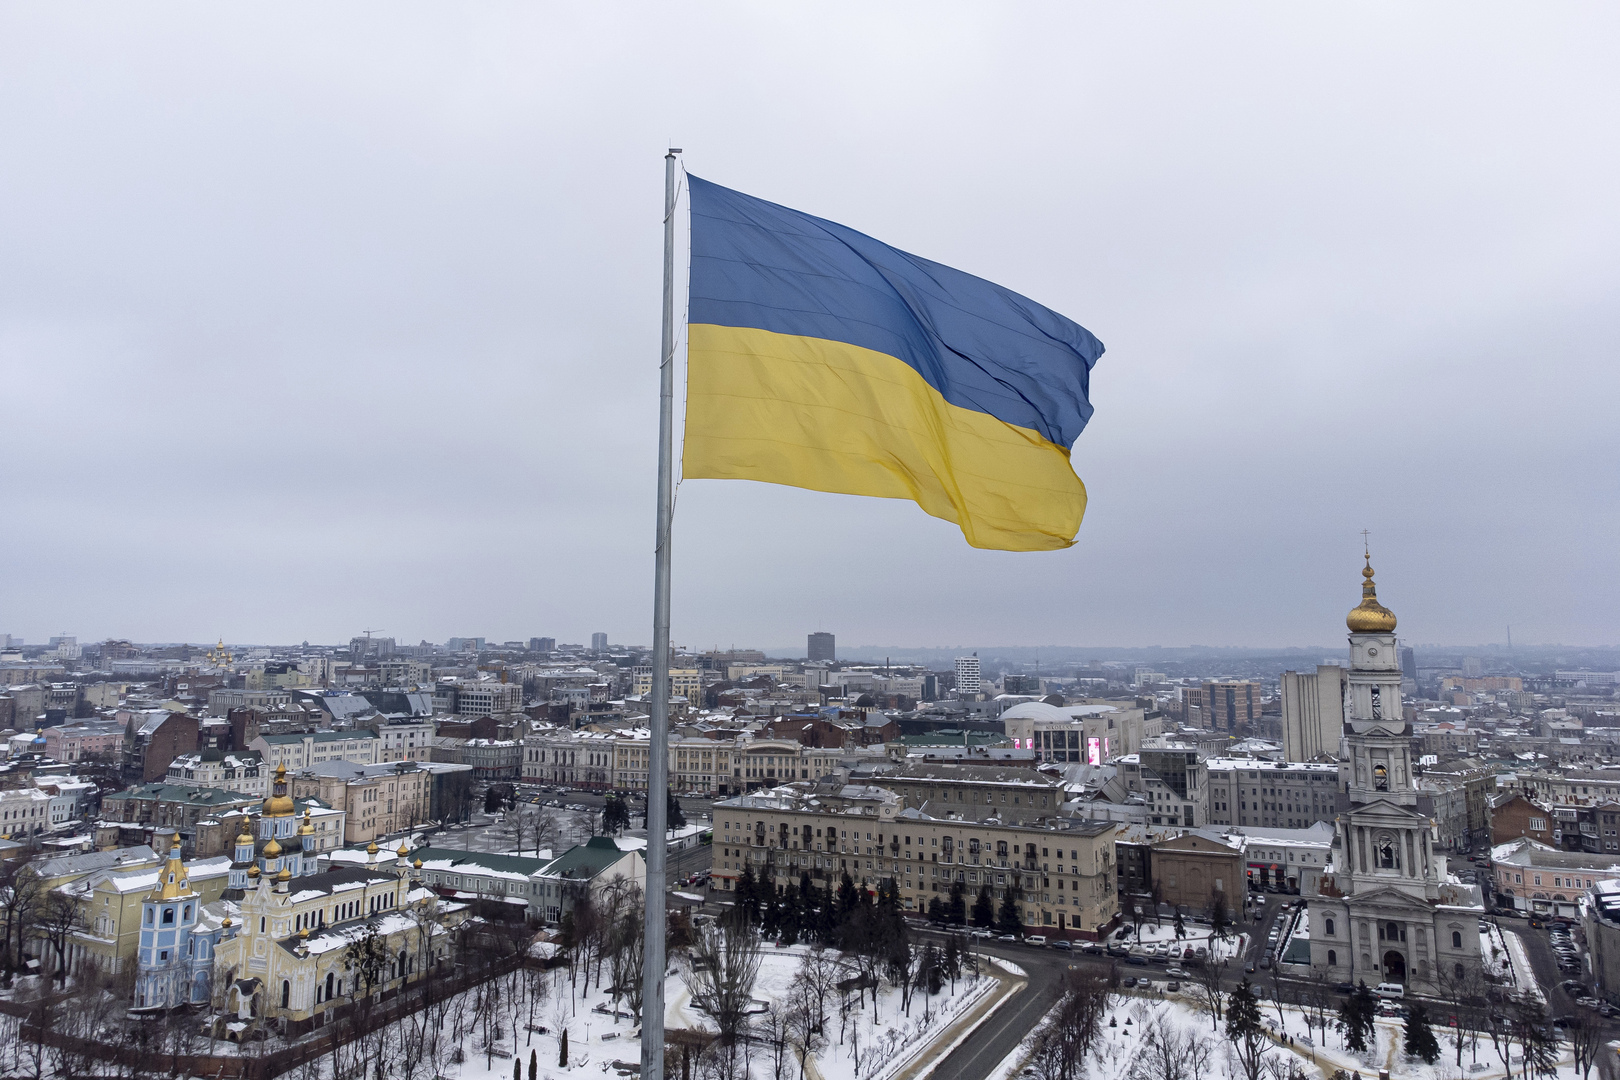 سفارة روسيا في واشنطن: خبراء في الولايات المتحدة يبحثون حقيقة وجود المعامل البيولوجية في أوكرانيا